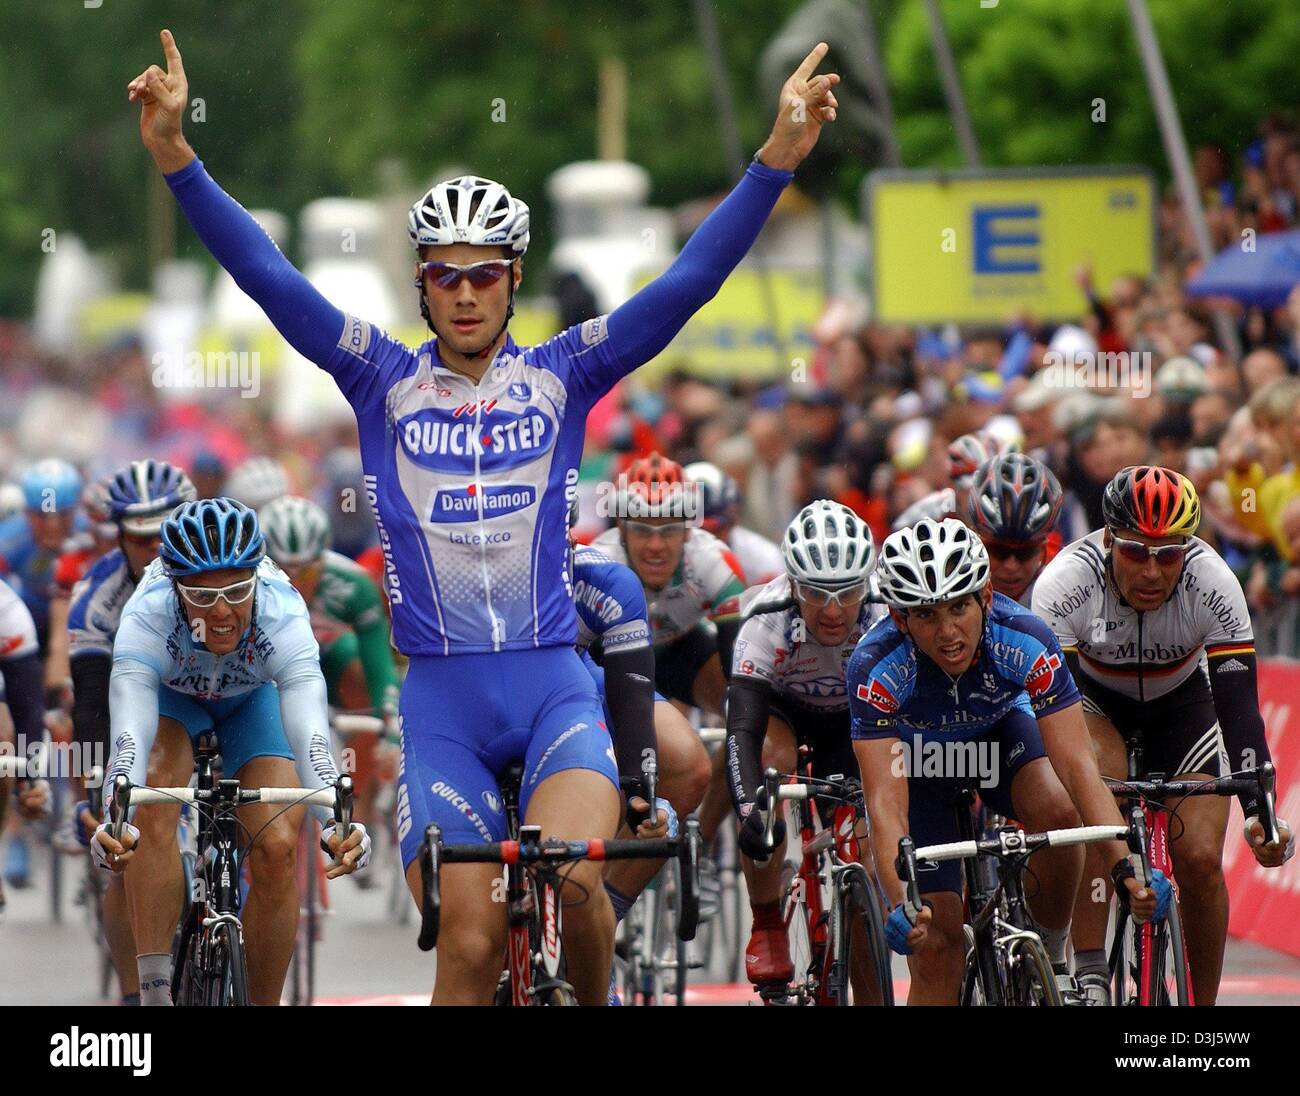 (Afp) - le cycliste belge Tom Boonen (Quickstep Davitamon équipe) célèbre après avoir remporté la deuxième étape du Tour de France cycliste à Wangen im Allgaeu, Allemagne, mardi, 1 juin 2004. Les sept étapes longue tournée totalise 1 095,7 km et mène de Karlsruhe à Leipzig. Banque D'Images